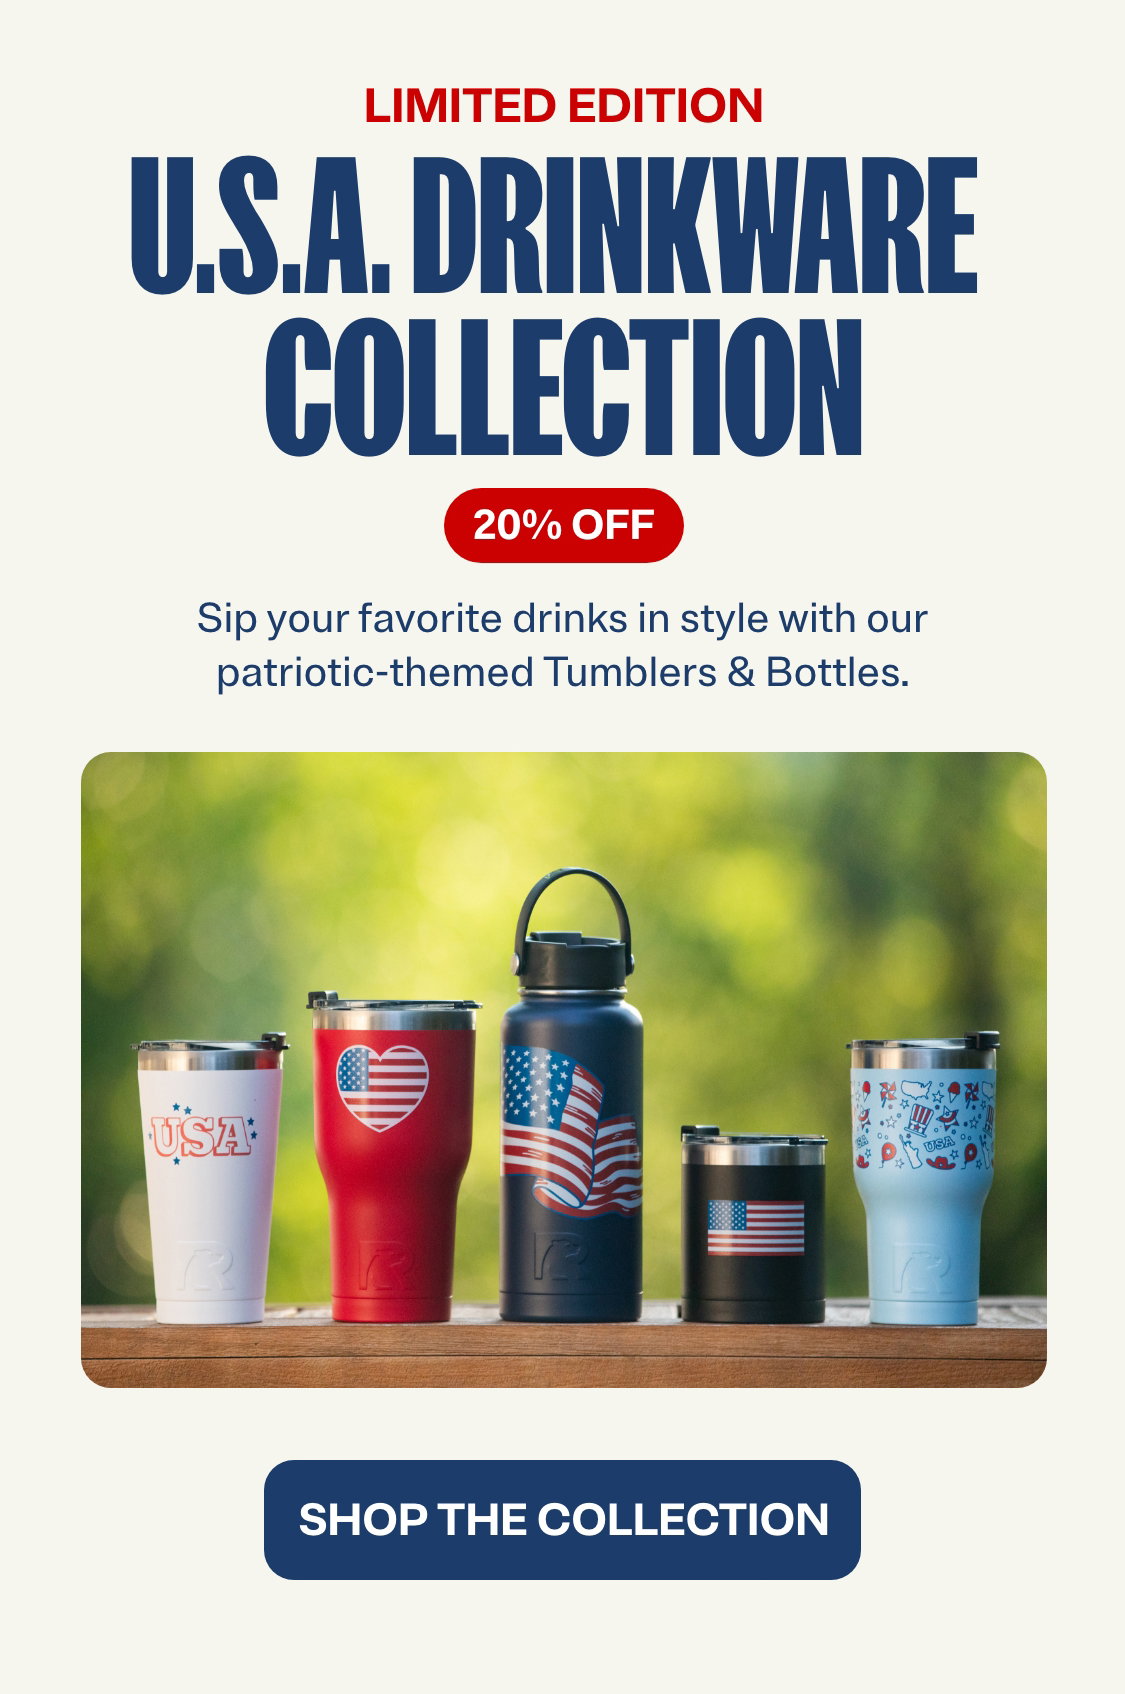 USA Drinkware Collection